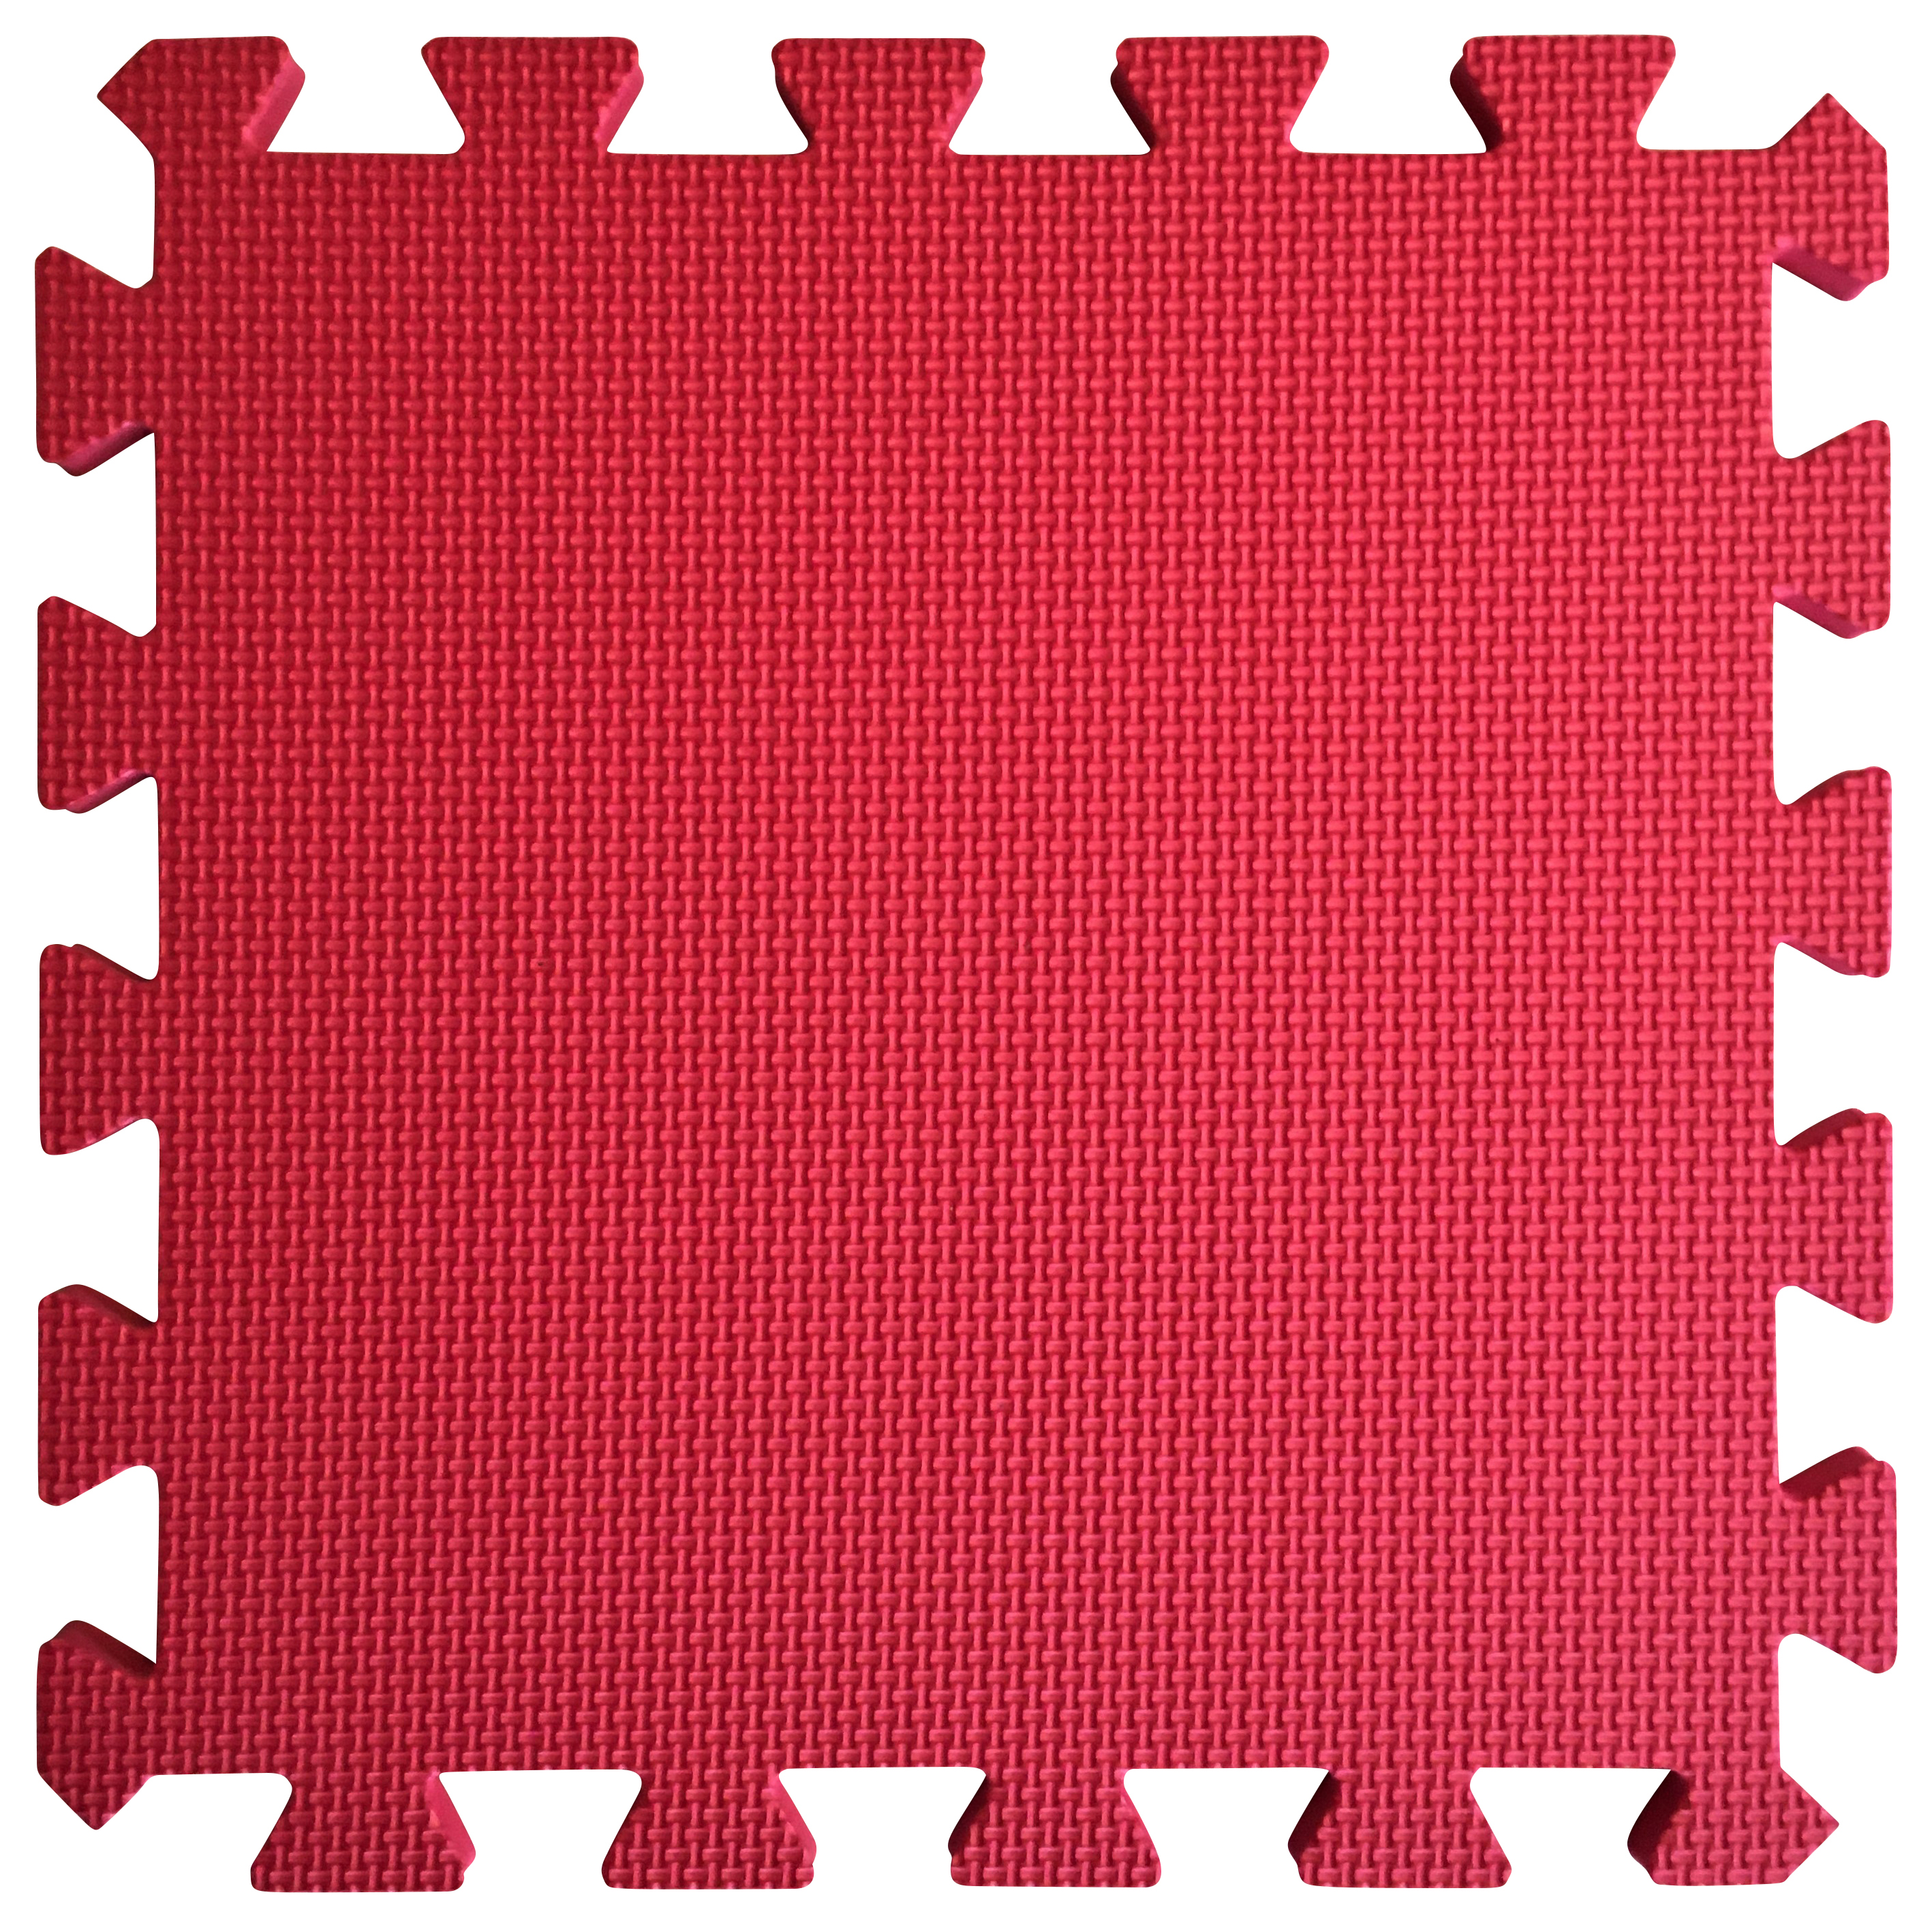 Image of Warm Floor Red Interlocking Floor Tiles for Garden Buildings - 6 x 6ft